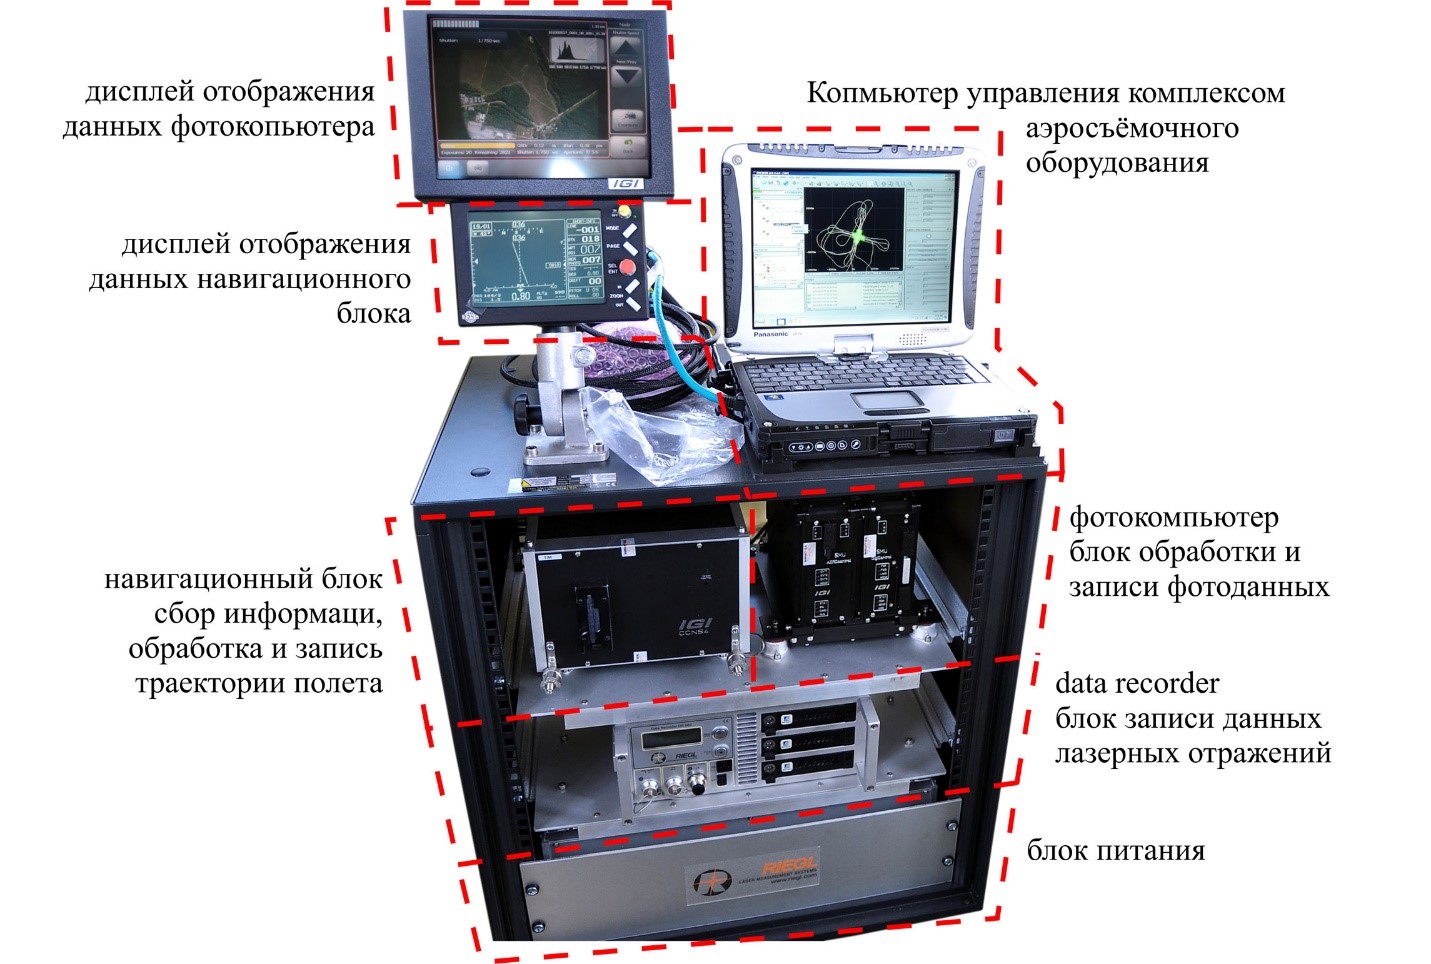 Основные элементы управления воздушным лазерным сканером во время съёмки.